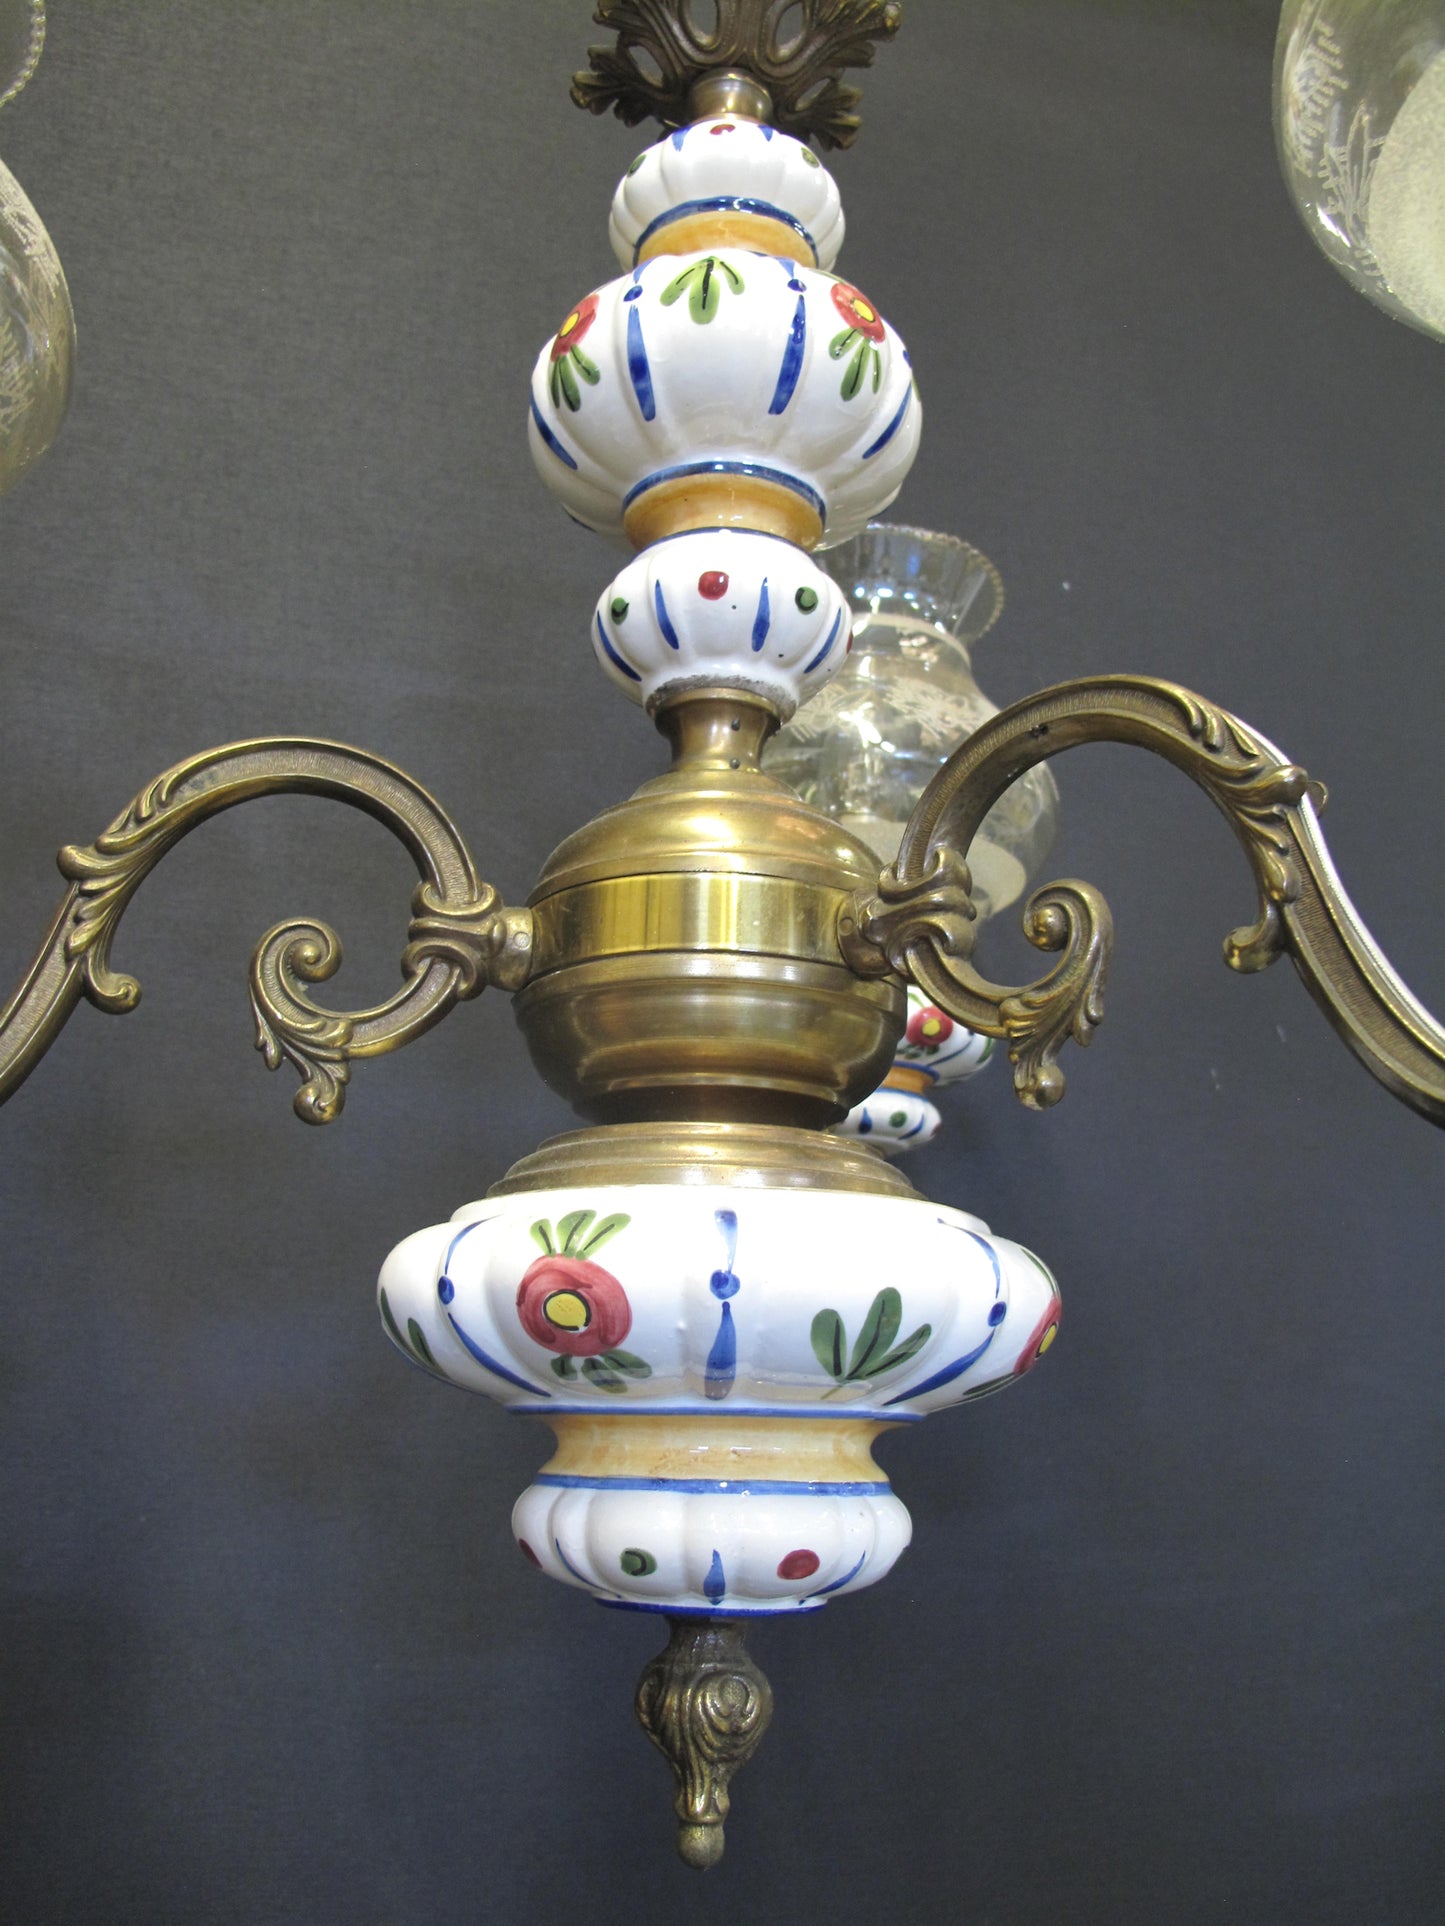 3 Arm brass & ceramic chandelier, full stem